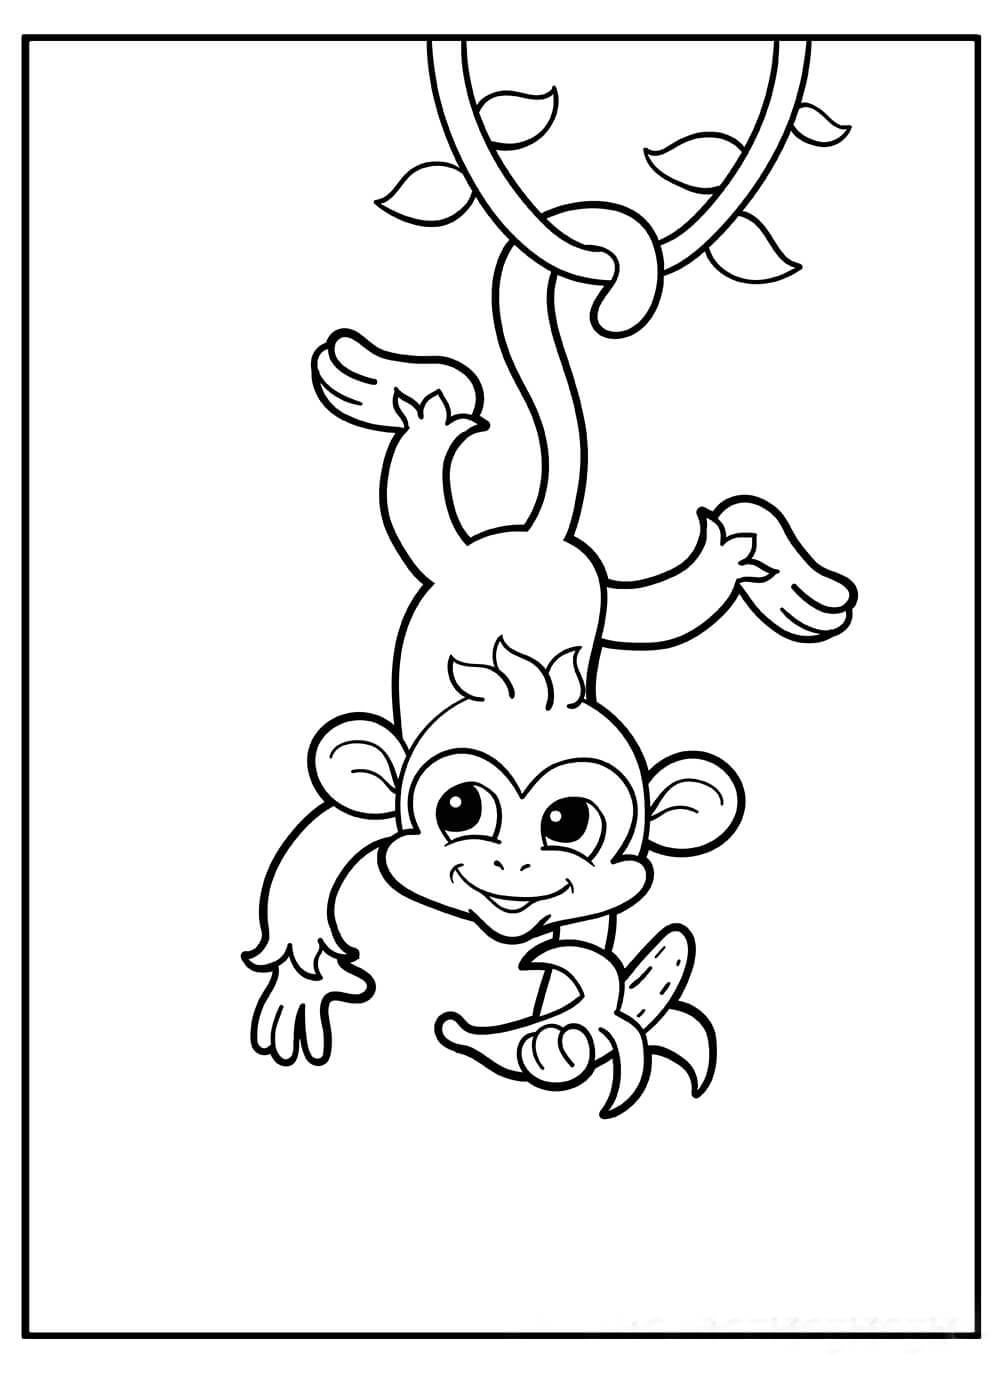 Mono sostiene Plátano y Cuelga Boca Abajo de un Árbol